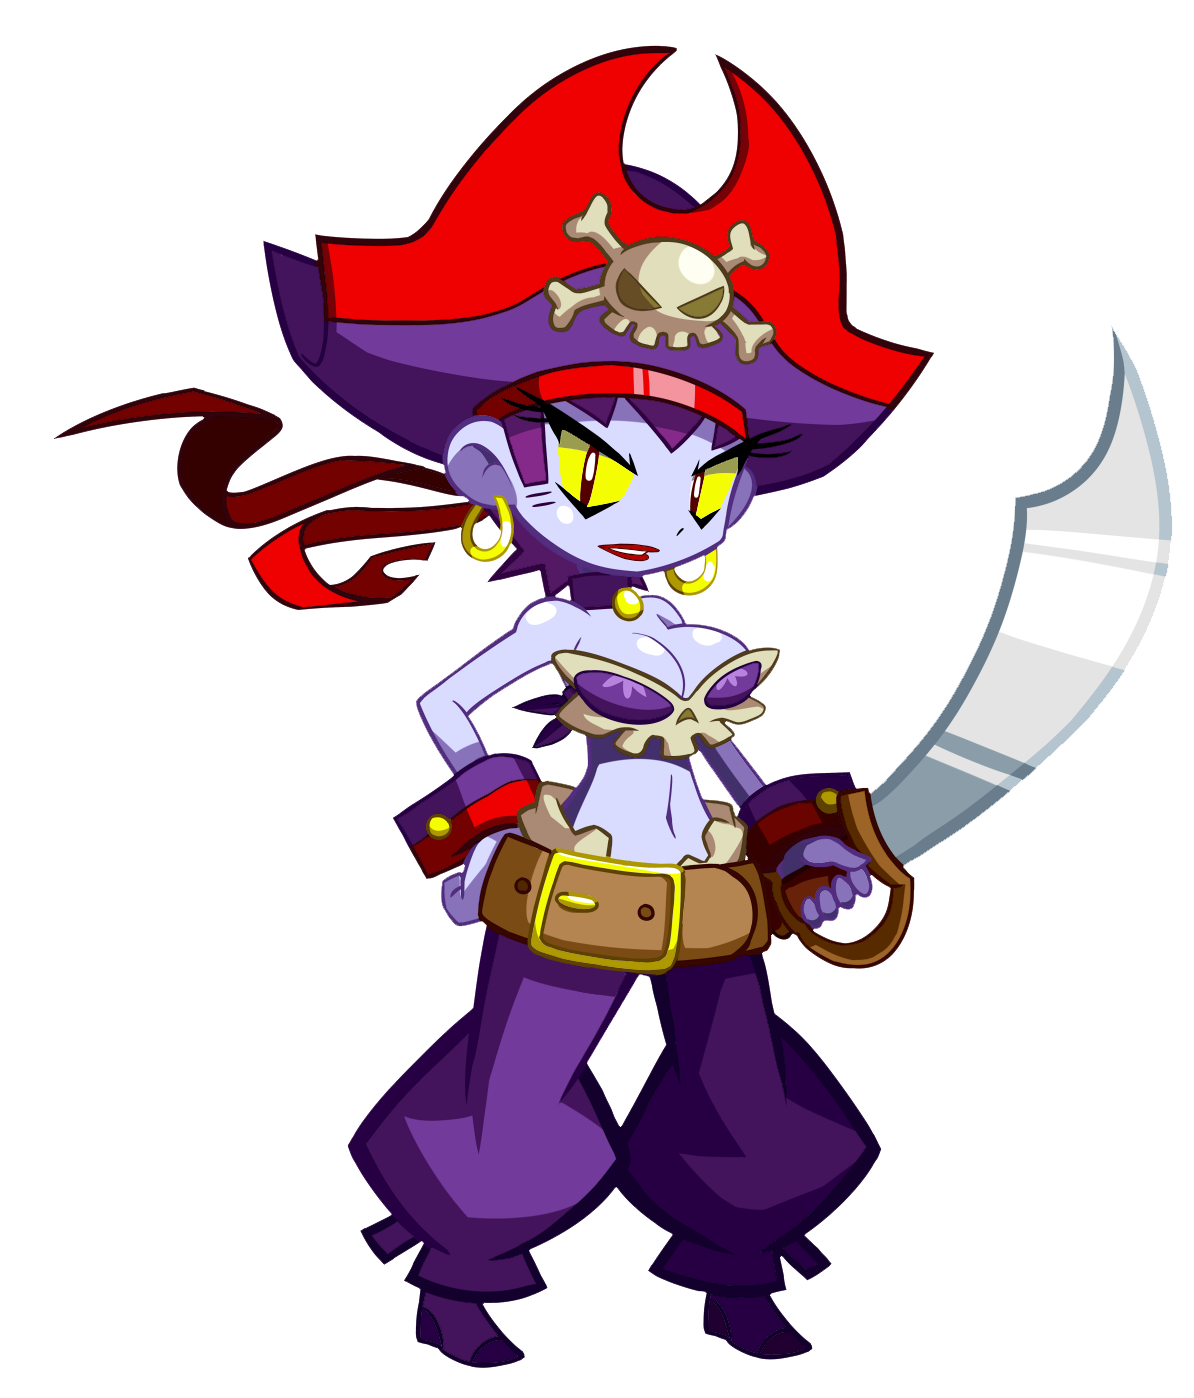 Categoríapersonajes De Shantae Juego Wiki Shantae Fandom Powered By Wikia 4531